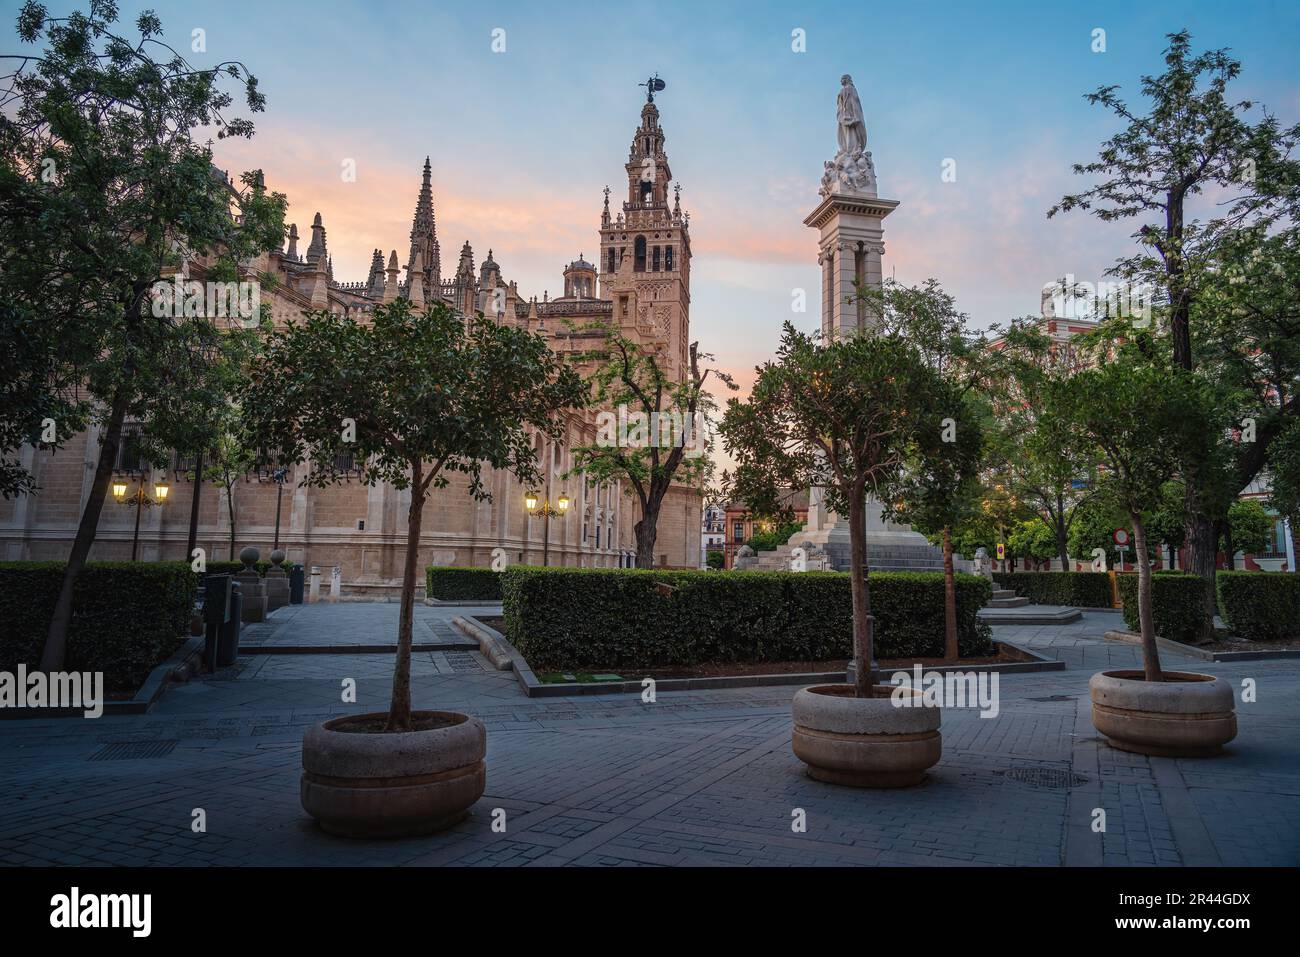 Plaza del Triunfo mit Kathedrale von Sevilla und Denkmal für die unbefleckte Empfängnis bei Sonnenuntergang - Sevilla, Andalusien, Spanien Stockfoto